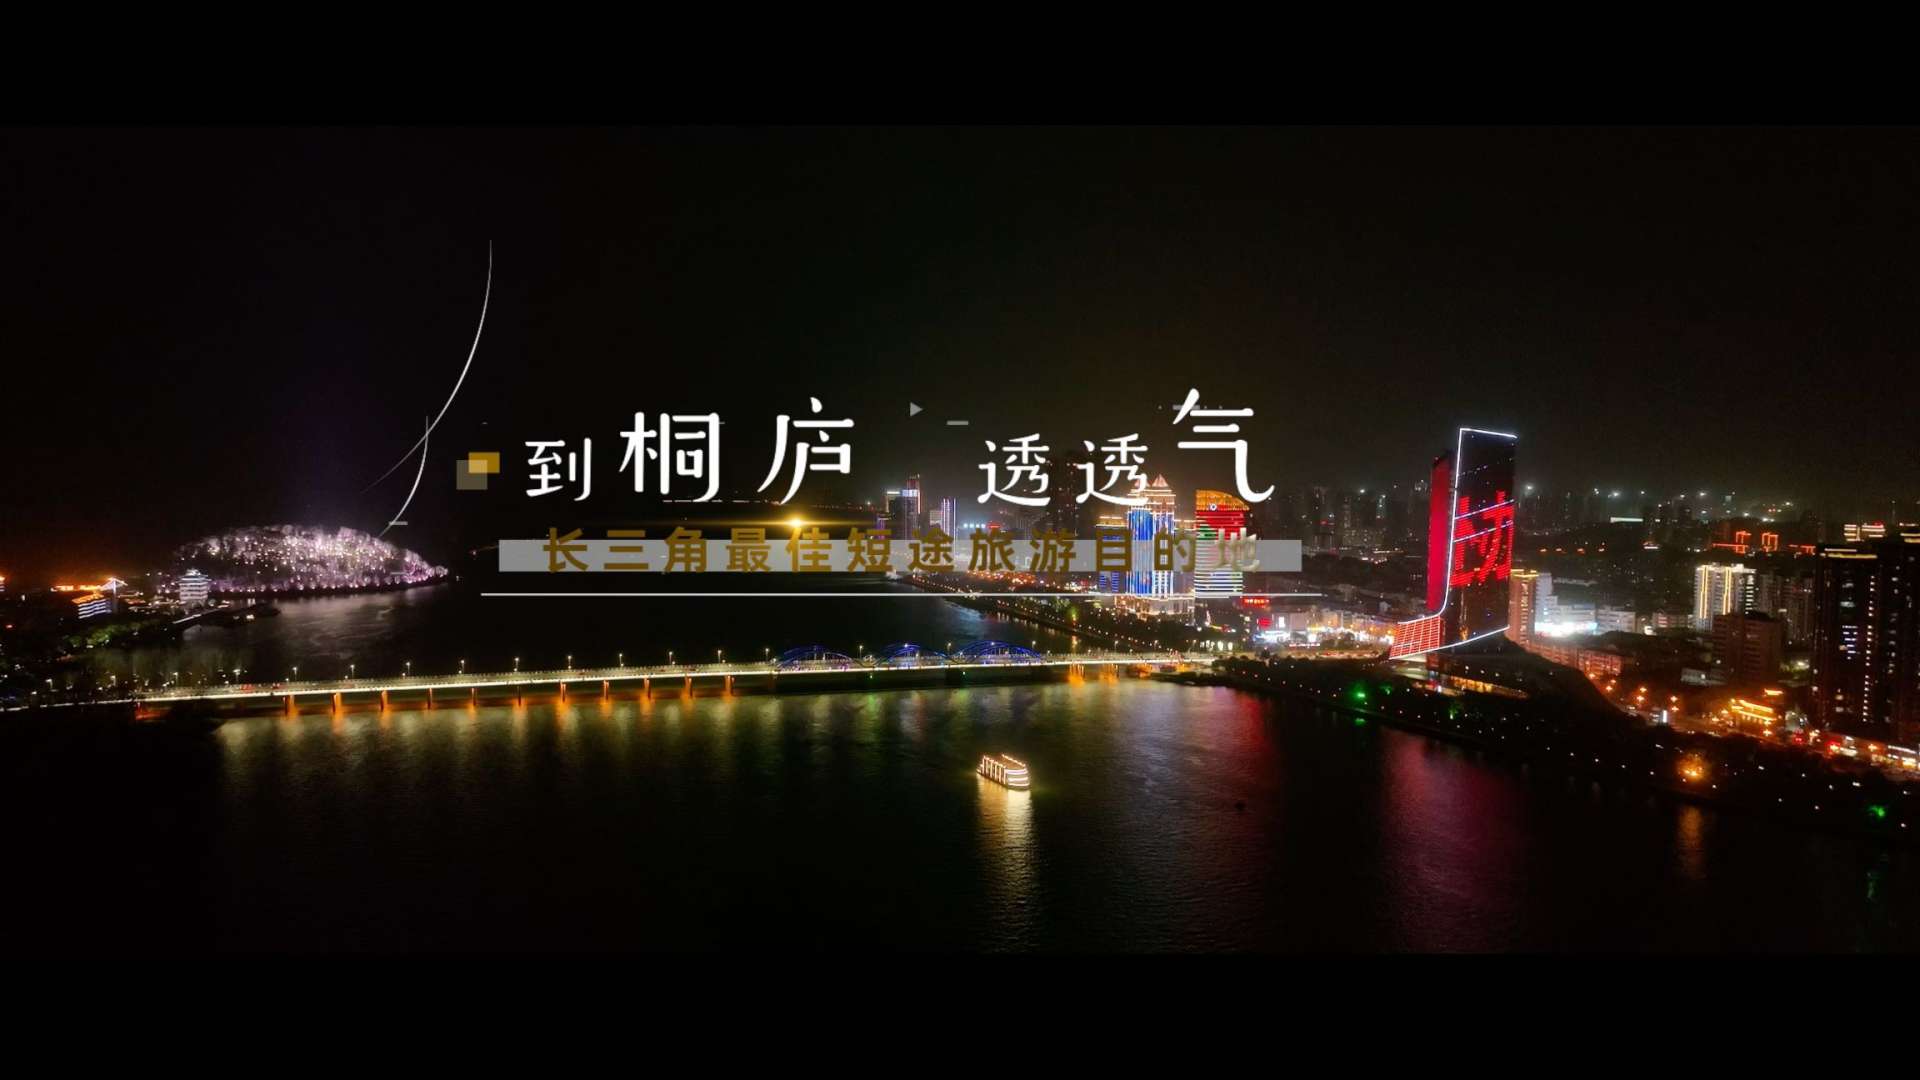 《到桐庐,透透气》旅游宣传短片